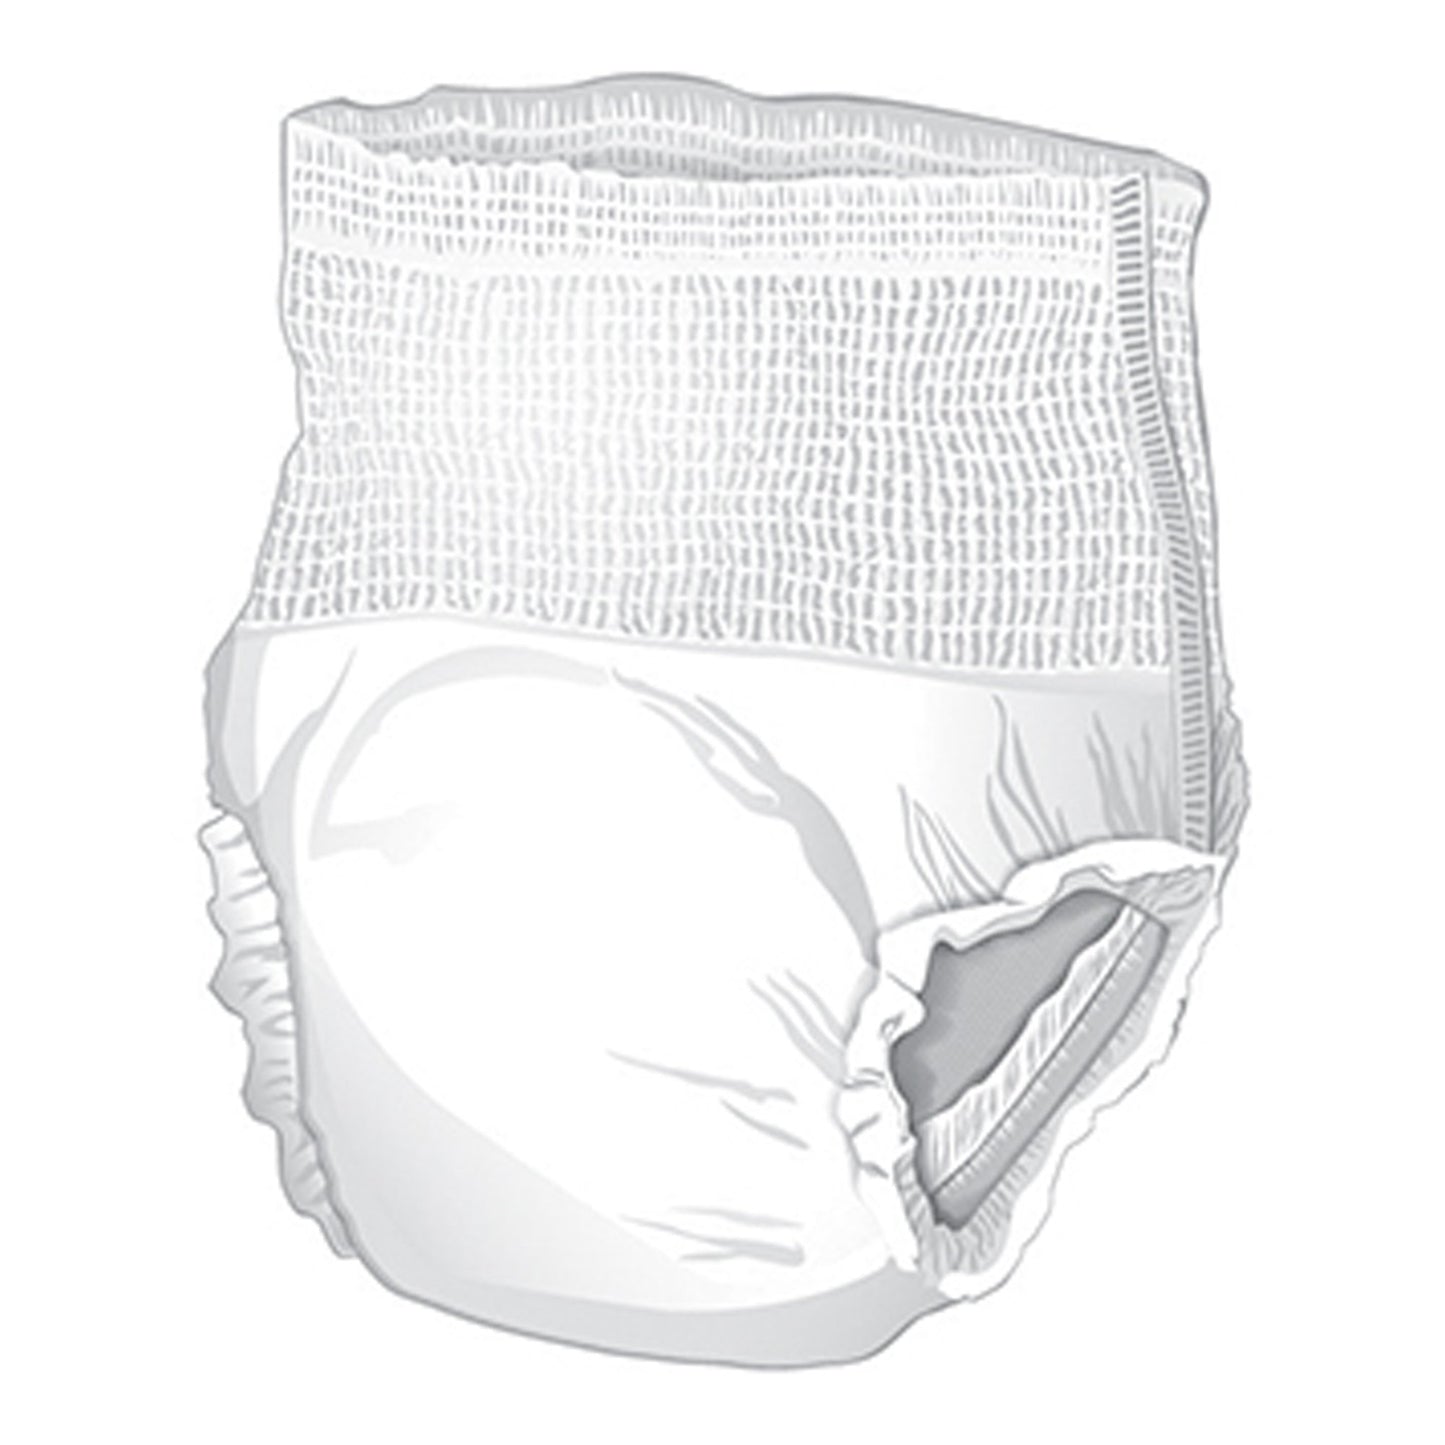 McKesson Ultra Heavy Absorbent Underwear, Medium, 80 ct